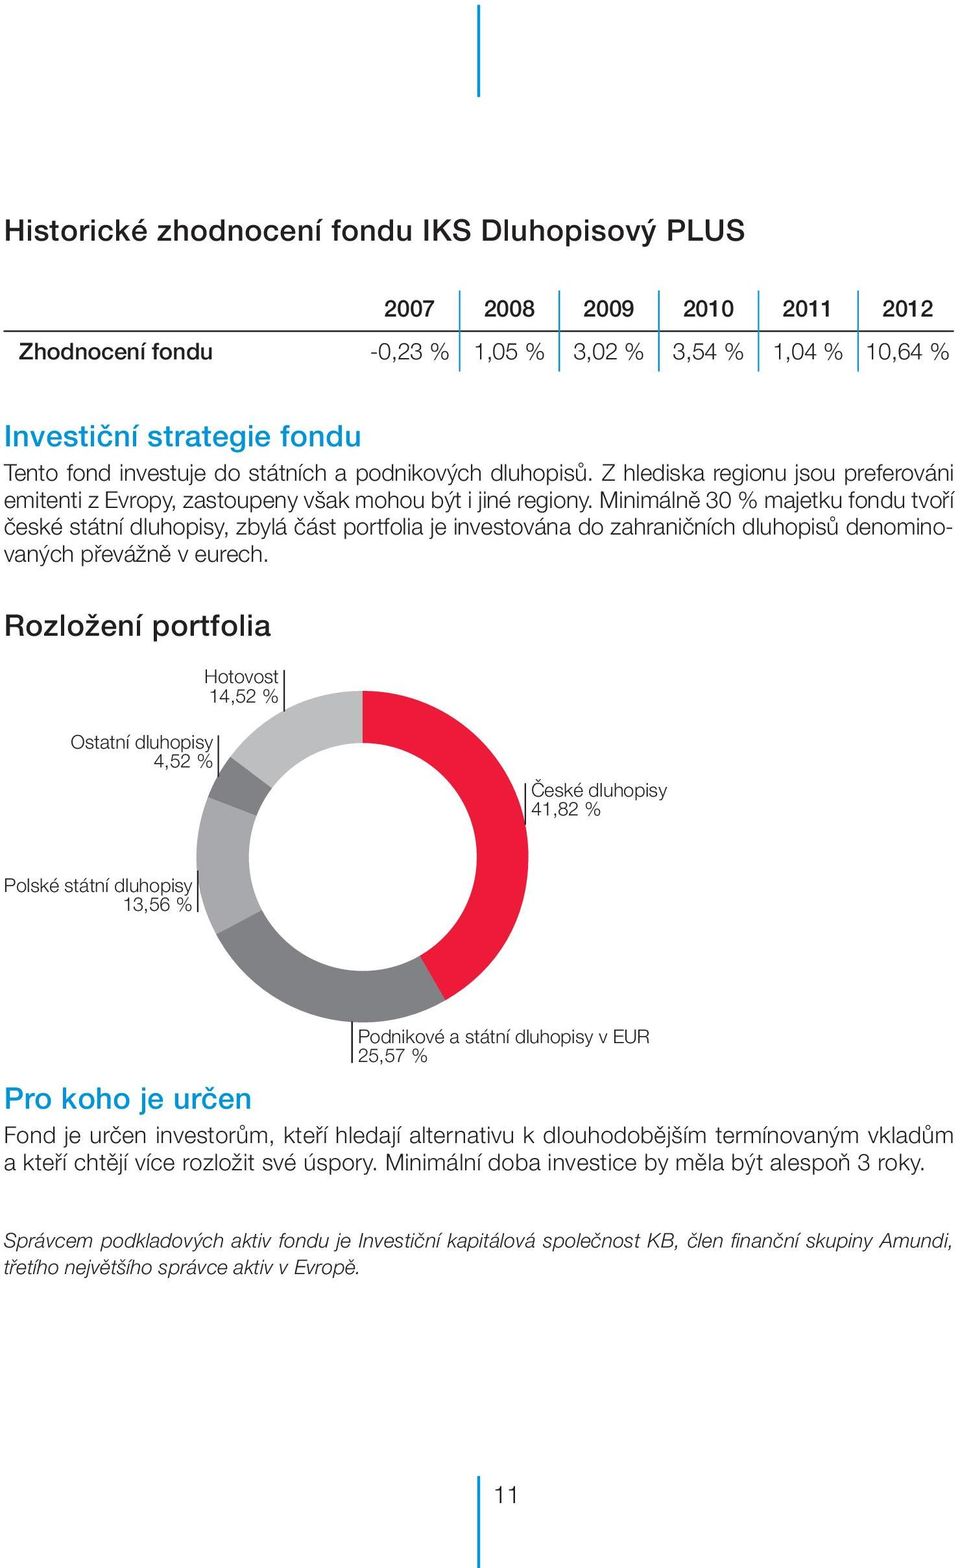 Minimálně 30 % majetku fondu tvoří české státní dluhopisy, zbylá část portfolia je investována do zahraničních dluhopisů denominovaných převážně v eurech.